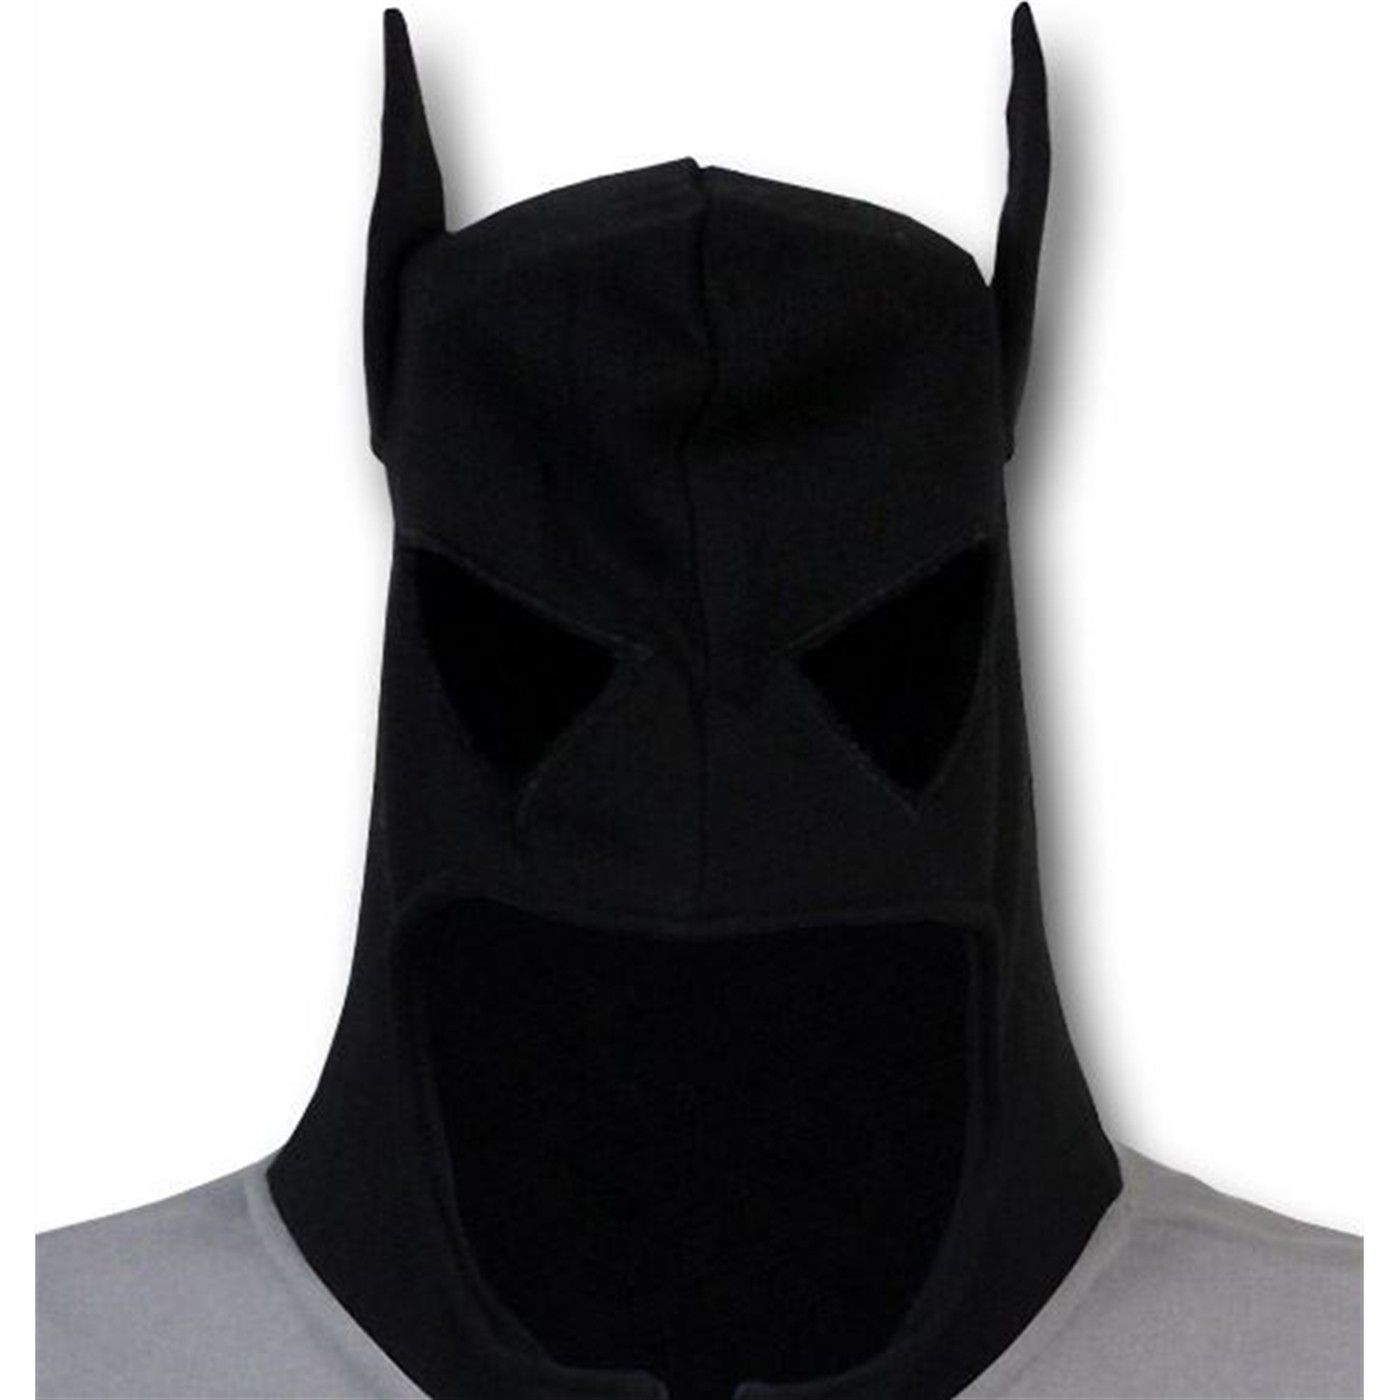 Batman Men's Costume Hoodie With Ears